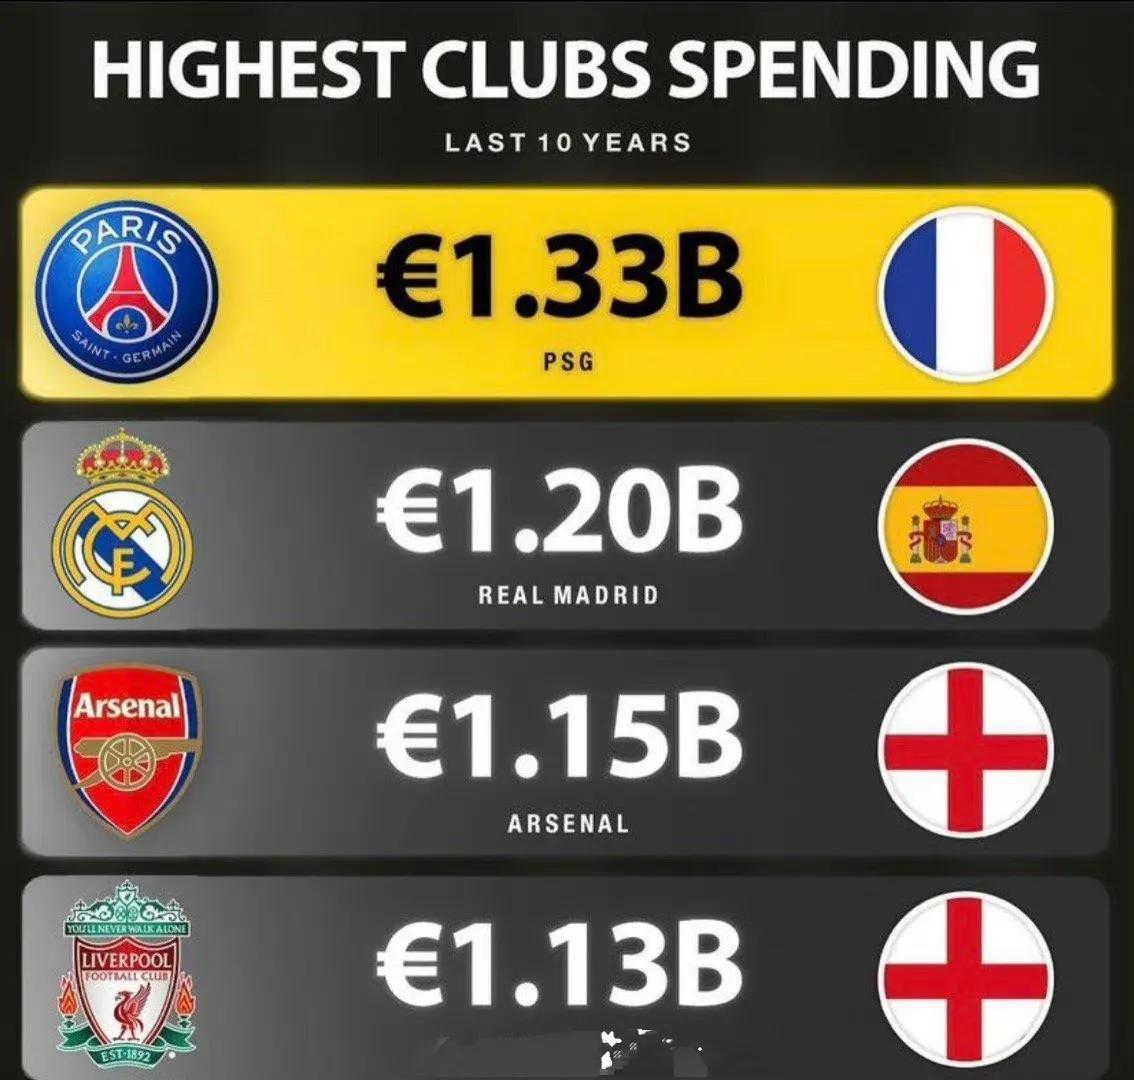 过去十年欧洲花费最多的球队，和他们的成绩。

大巴黎花了13.3亿欧元，只有法甲